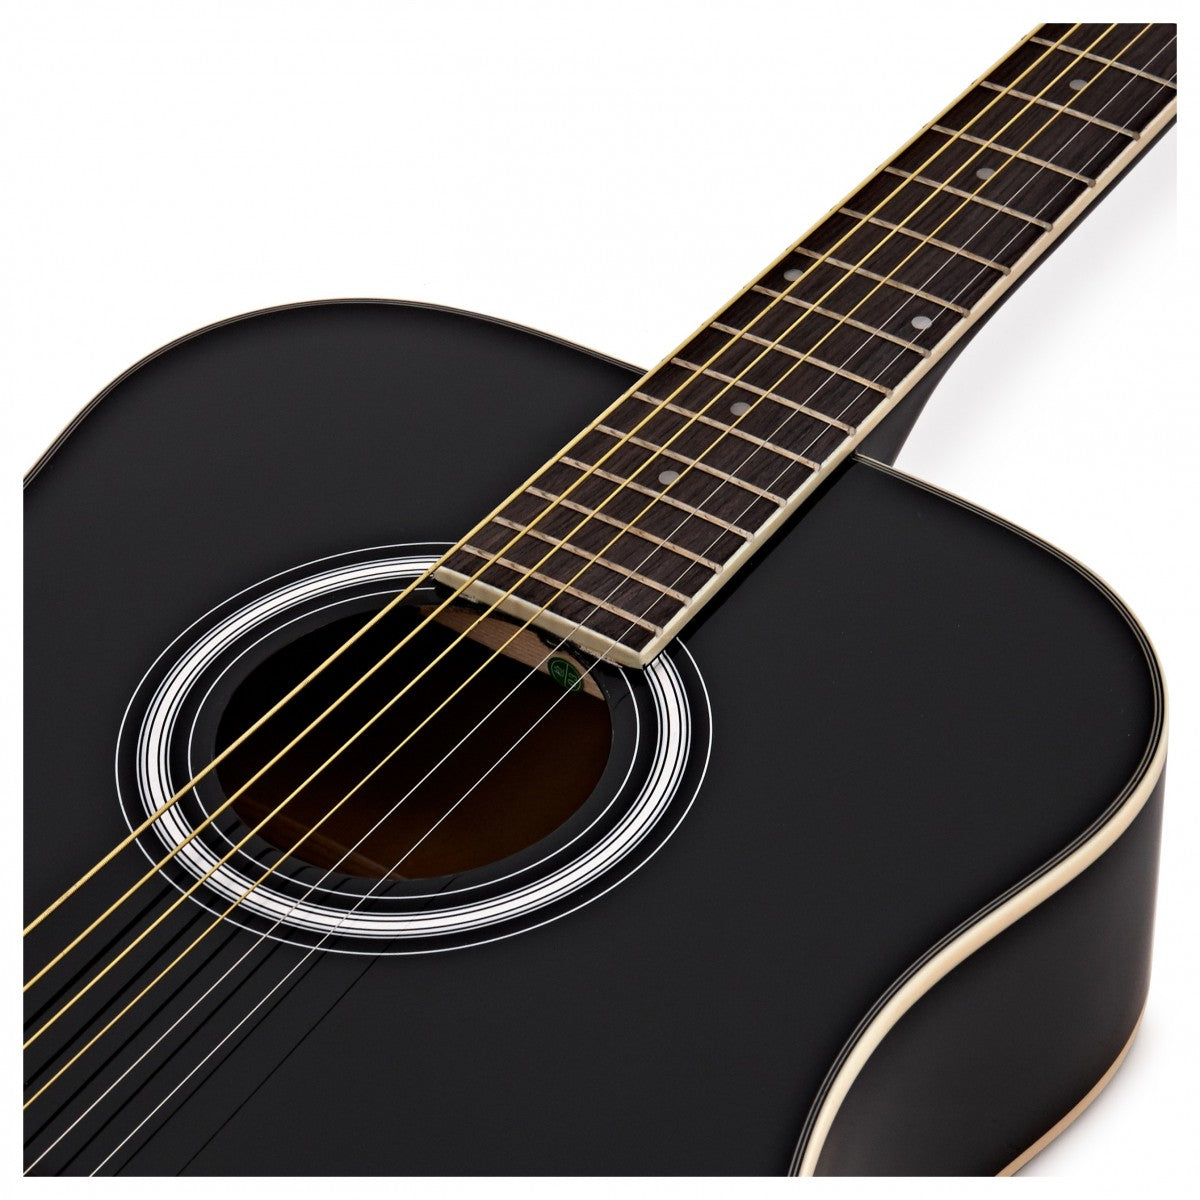 Test: Acoustic Guitar Starter Bundle